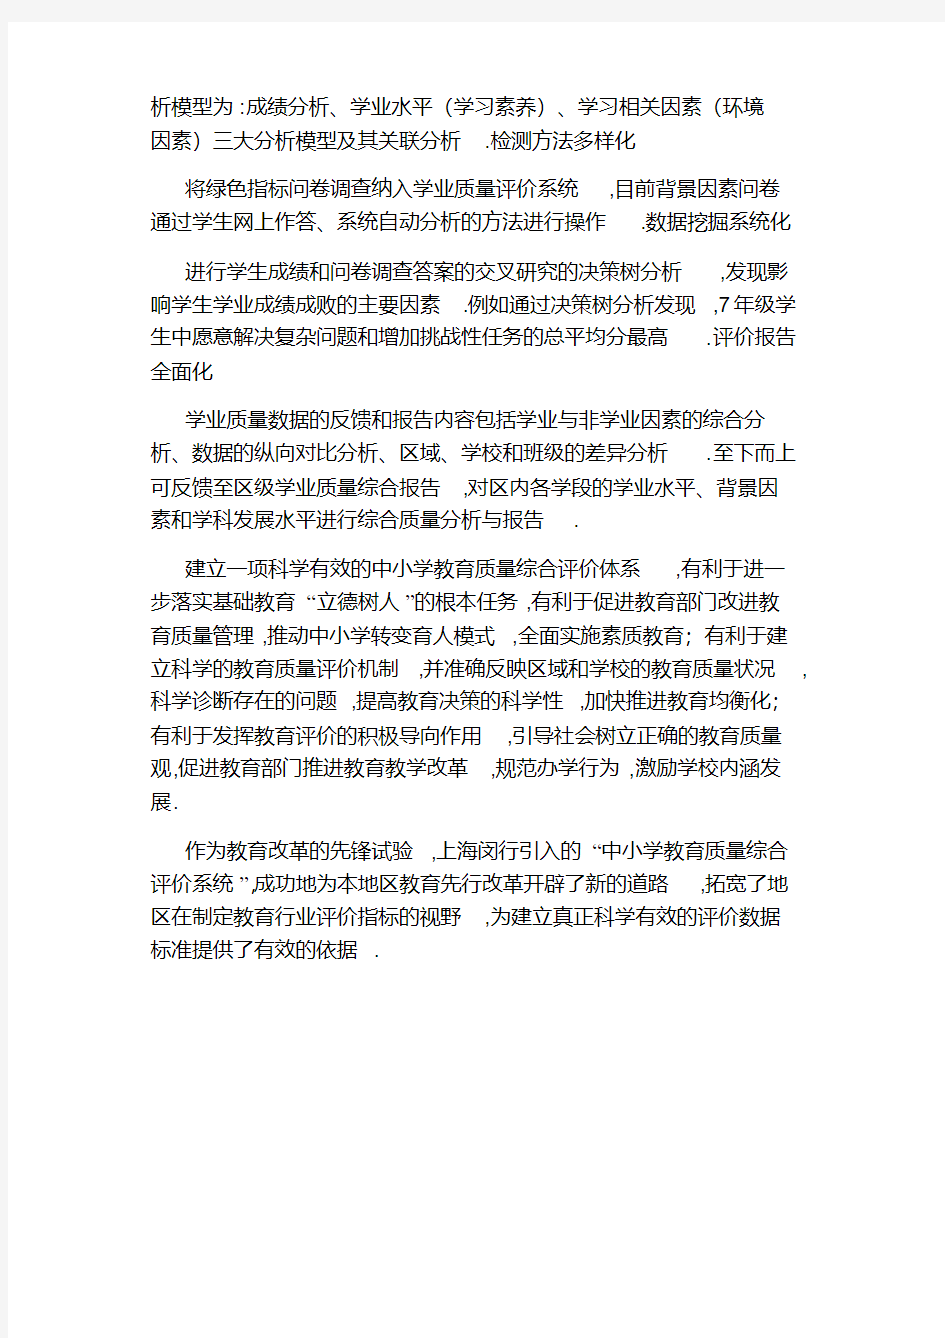 上海闵行中小学教育质量综合评价系统获国家鉴定